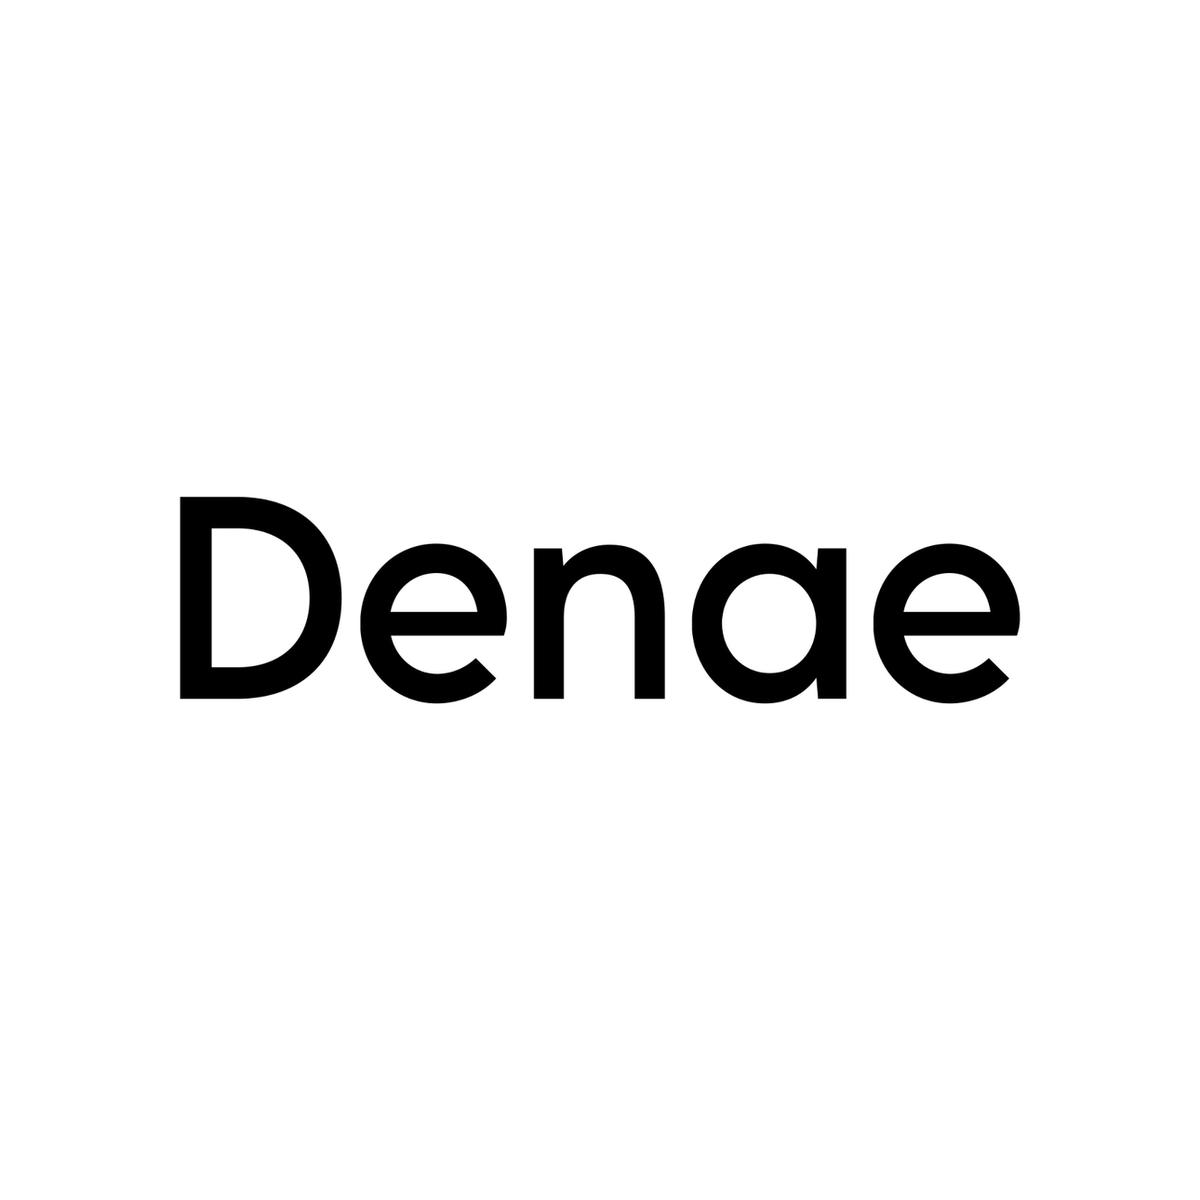 Denae Gibbs🌸's images